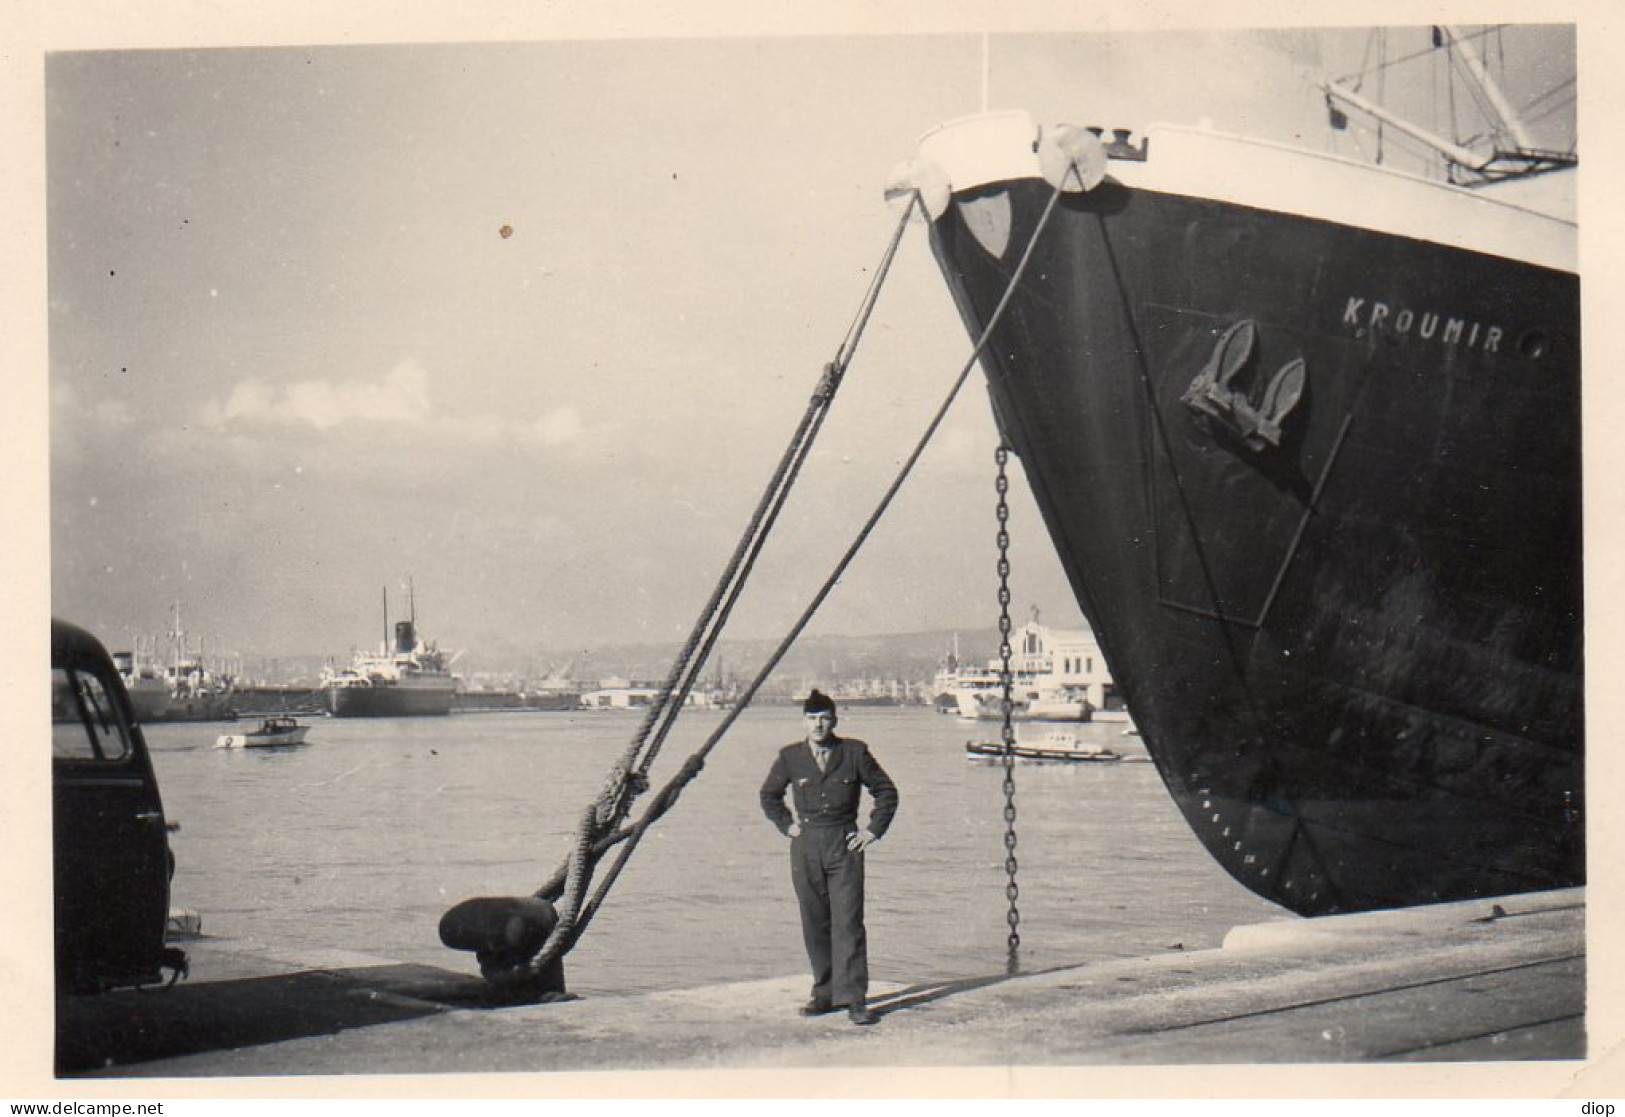 Photographie Photo Vintage Snapshot Homme Men Port Harbor Bateau Boat - Bateaux